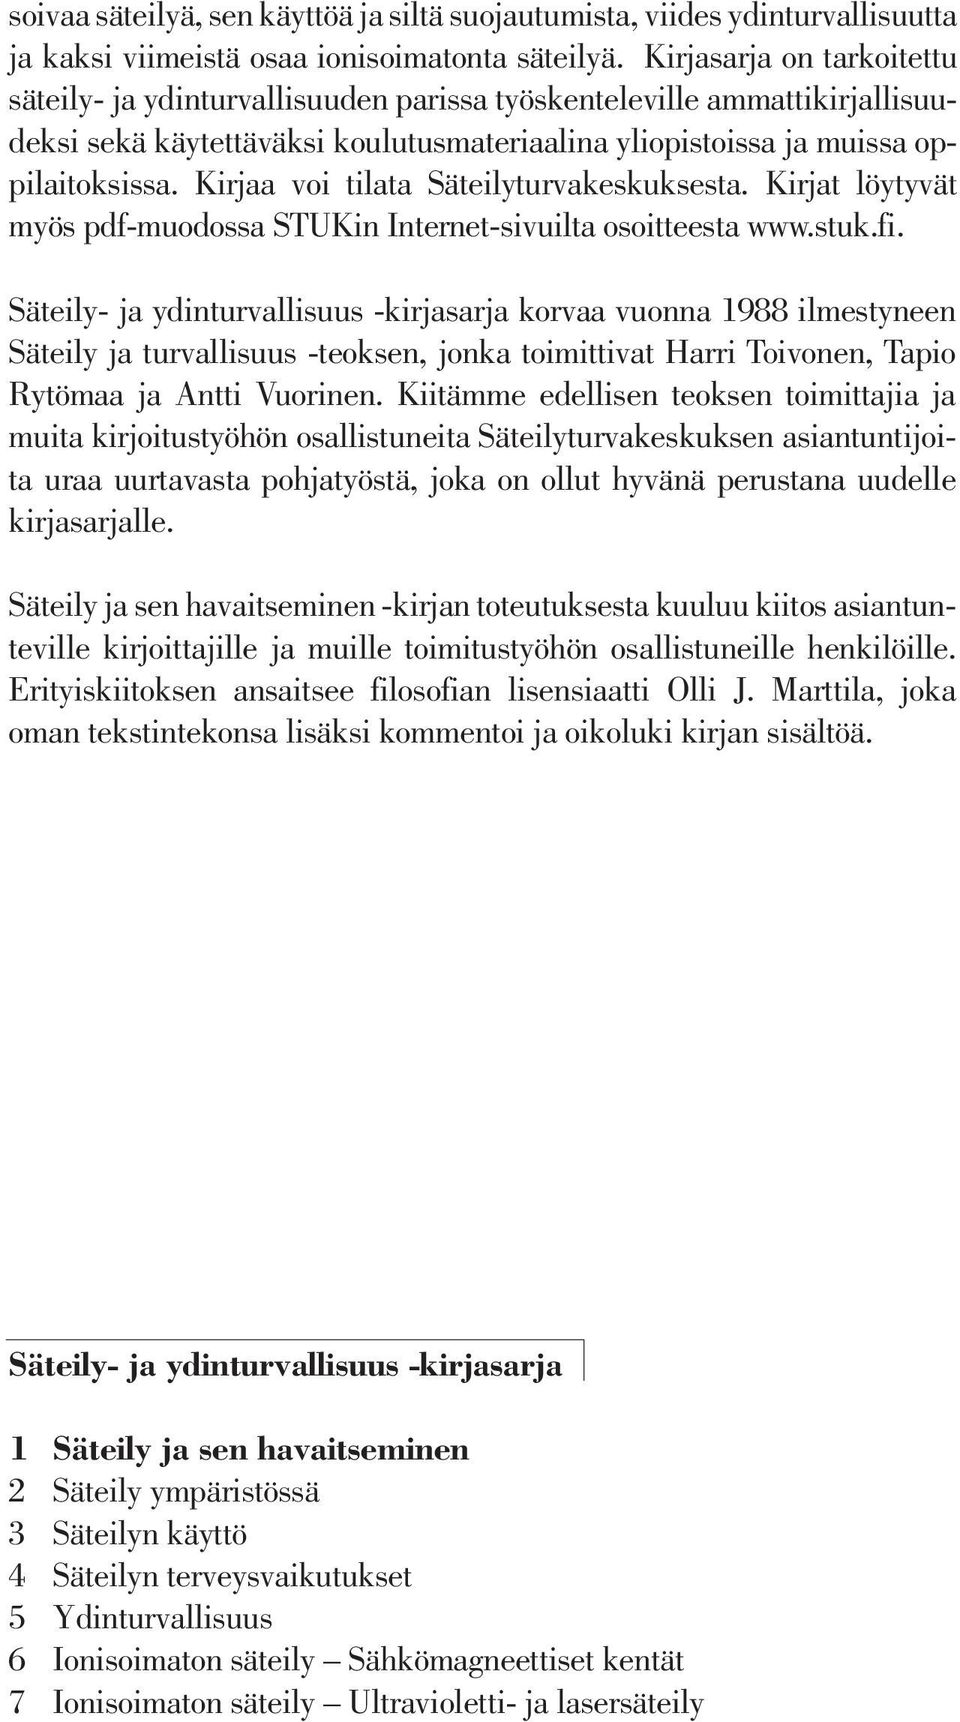 Kirjaa voi tilata Säteilyturvakeskuksesta. Kirjat löytyvät myös pdf-muodossa STUKin Internet-sivuilta osoitteesta www.stuk.fi.